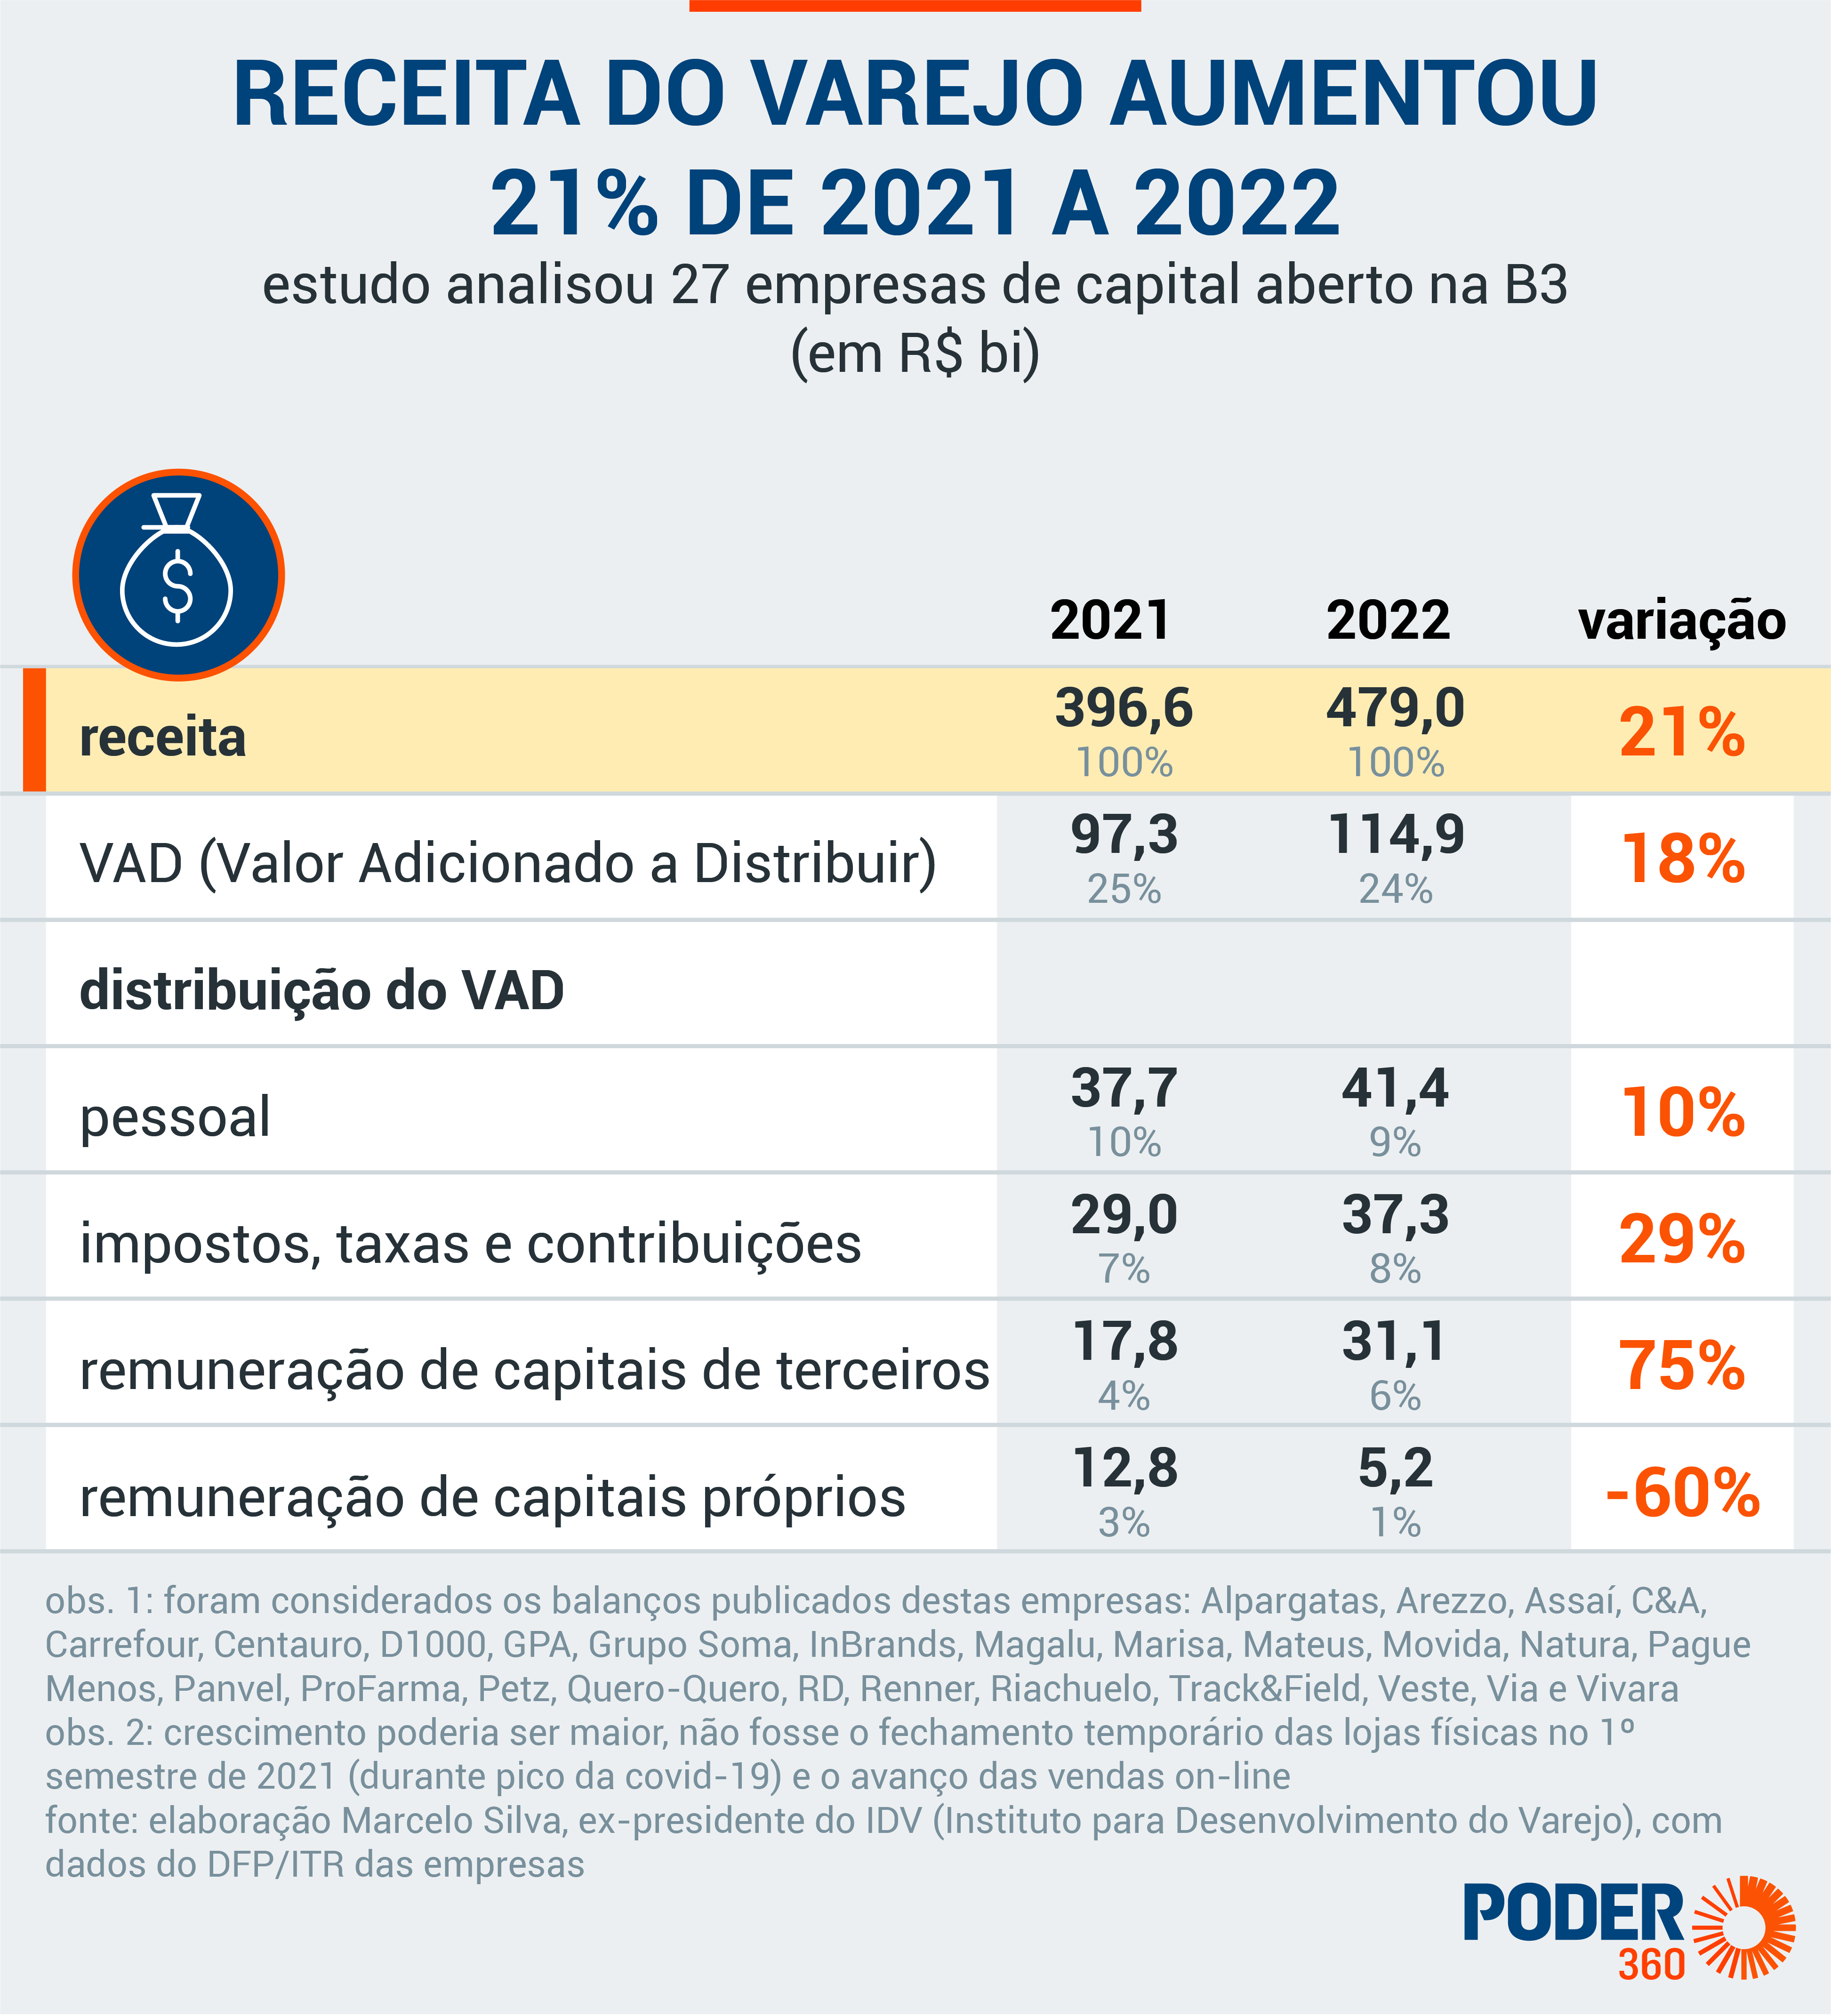 Receita do varejo aumentou 21% de 2021 a 2022. Elaboração: Marcelo Silva